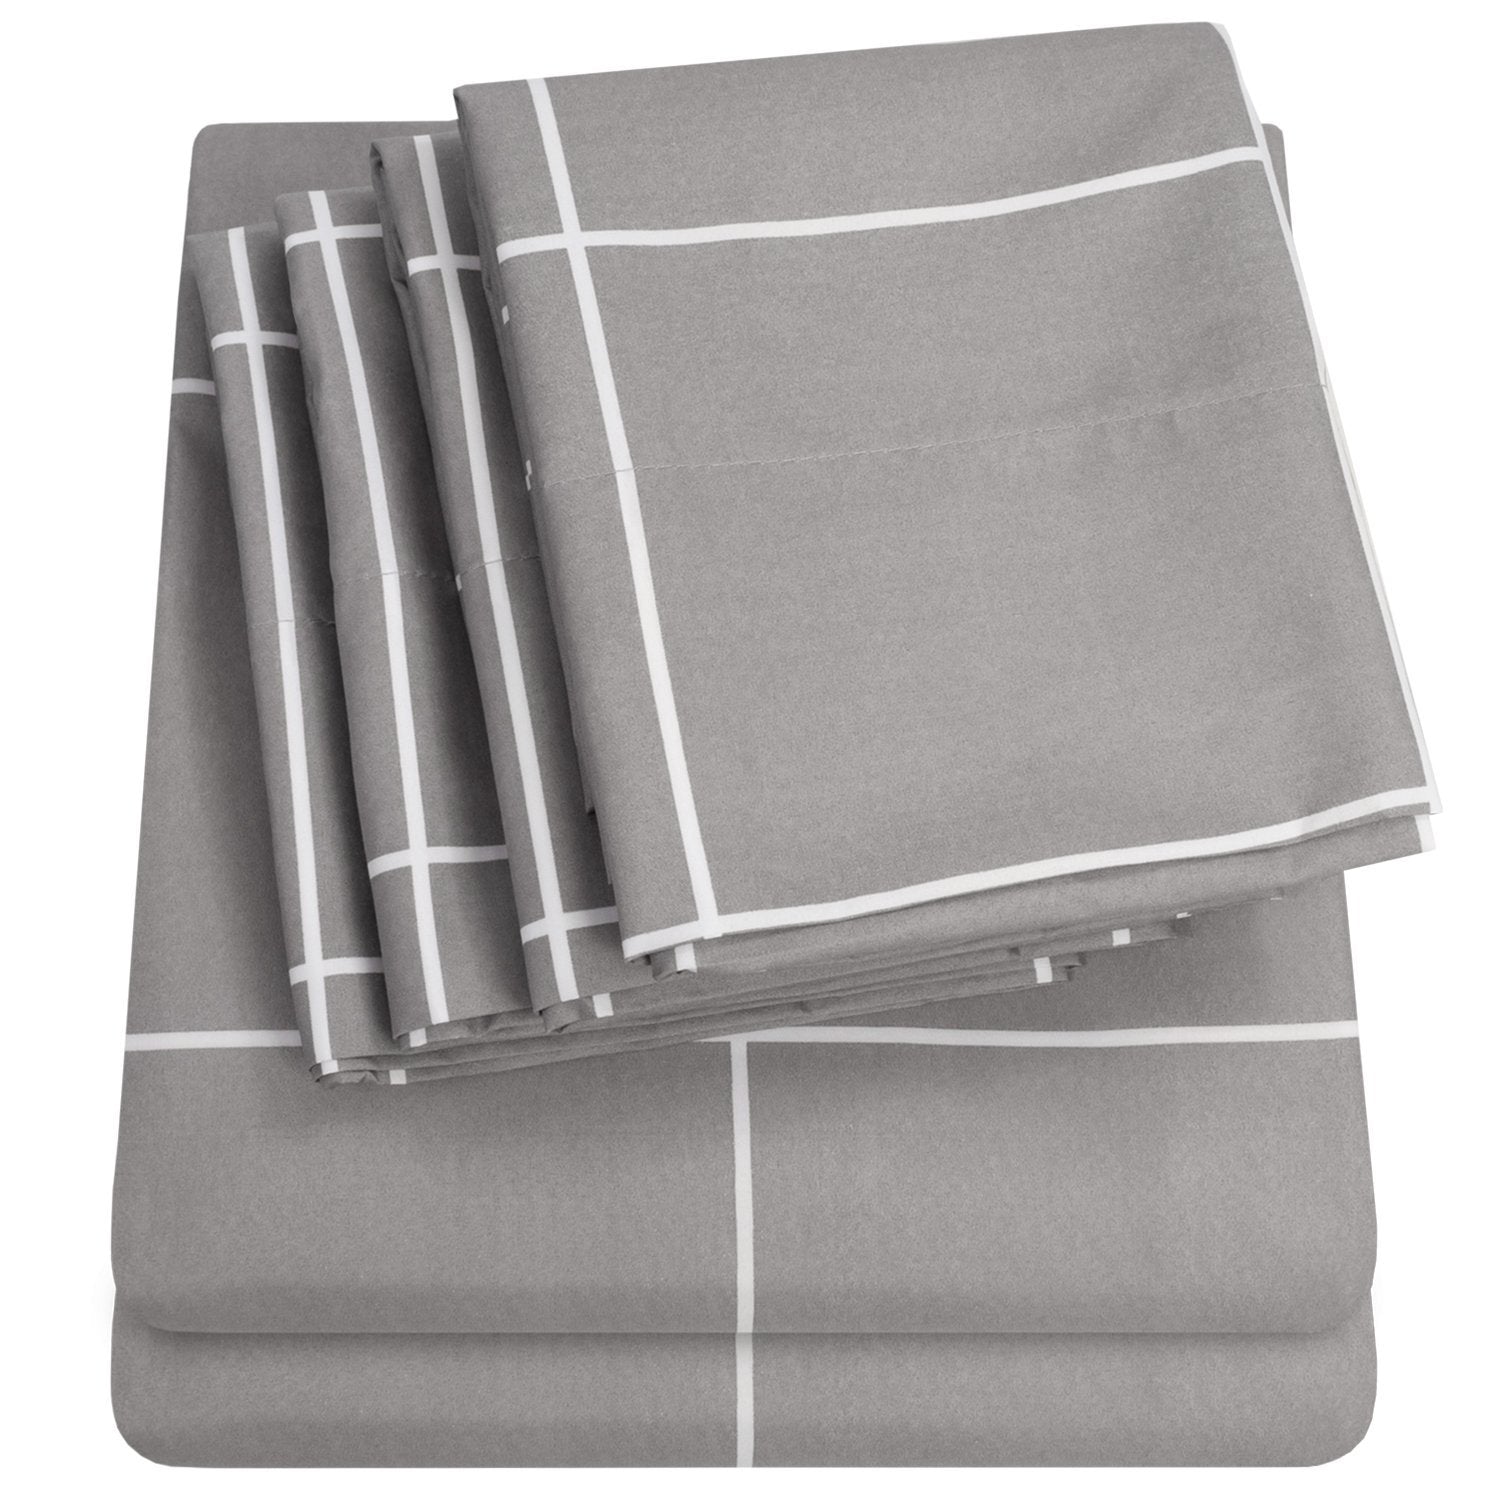 Deluxe 6-Piece Bed Sheet Set (Loft Window Pane Gray) - Folded